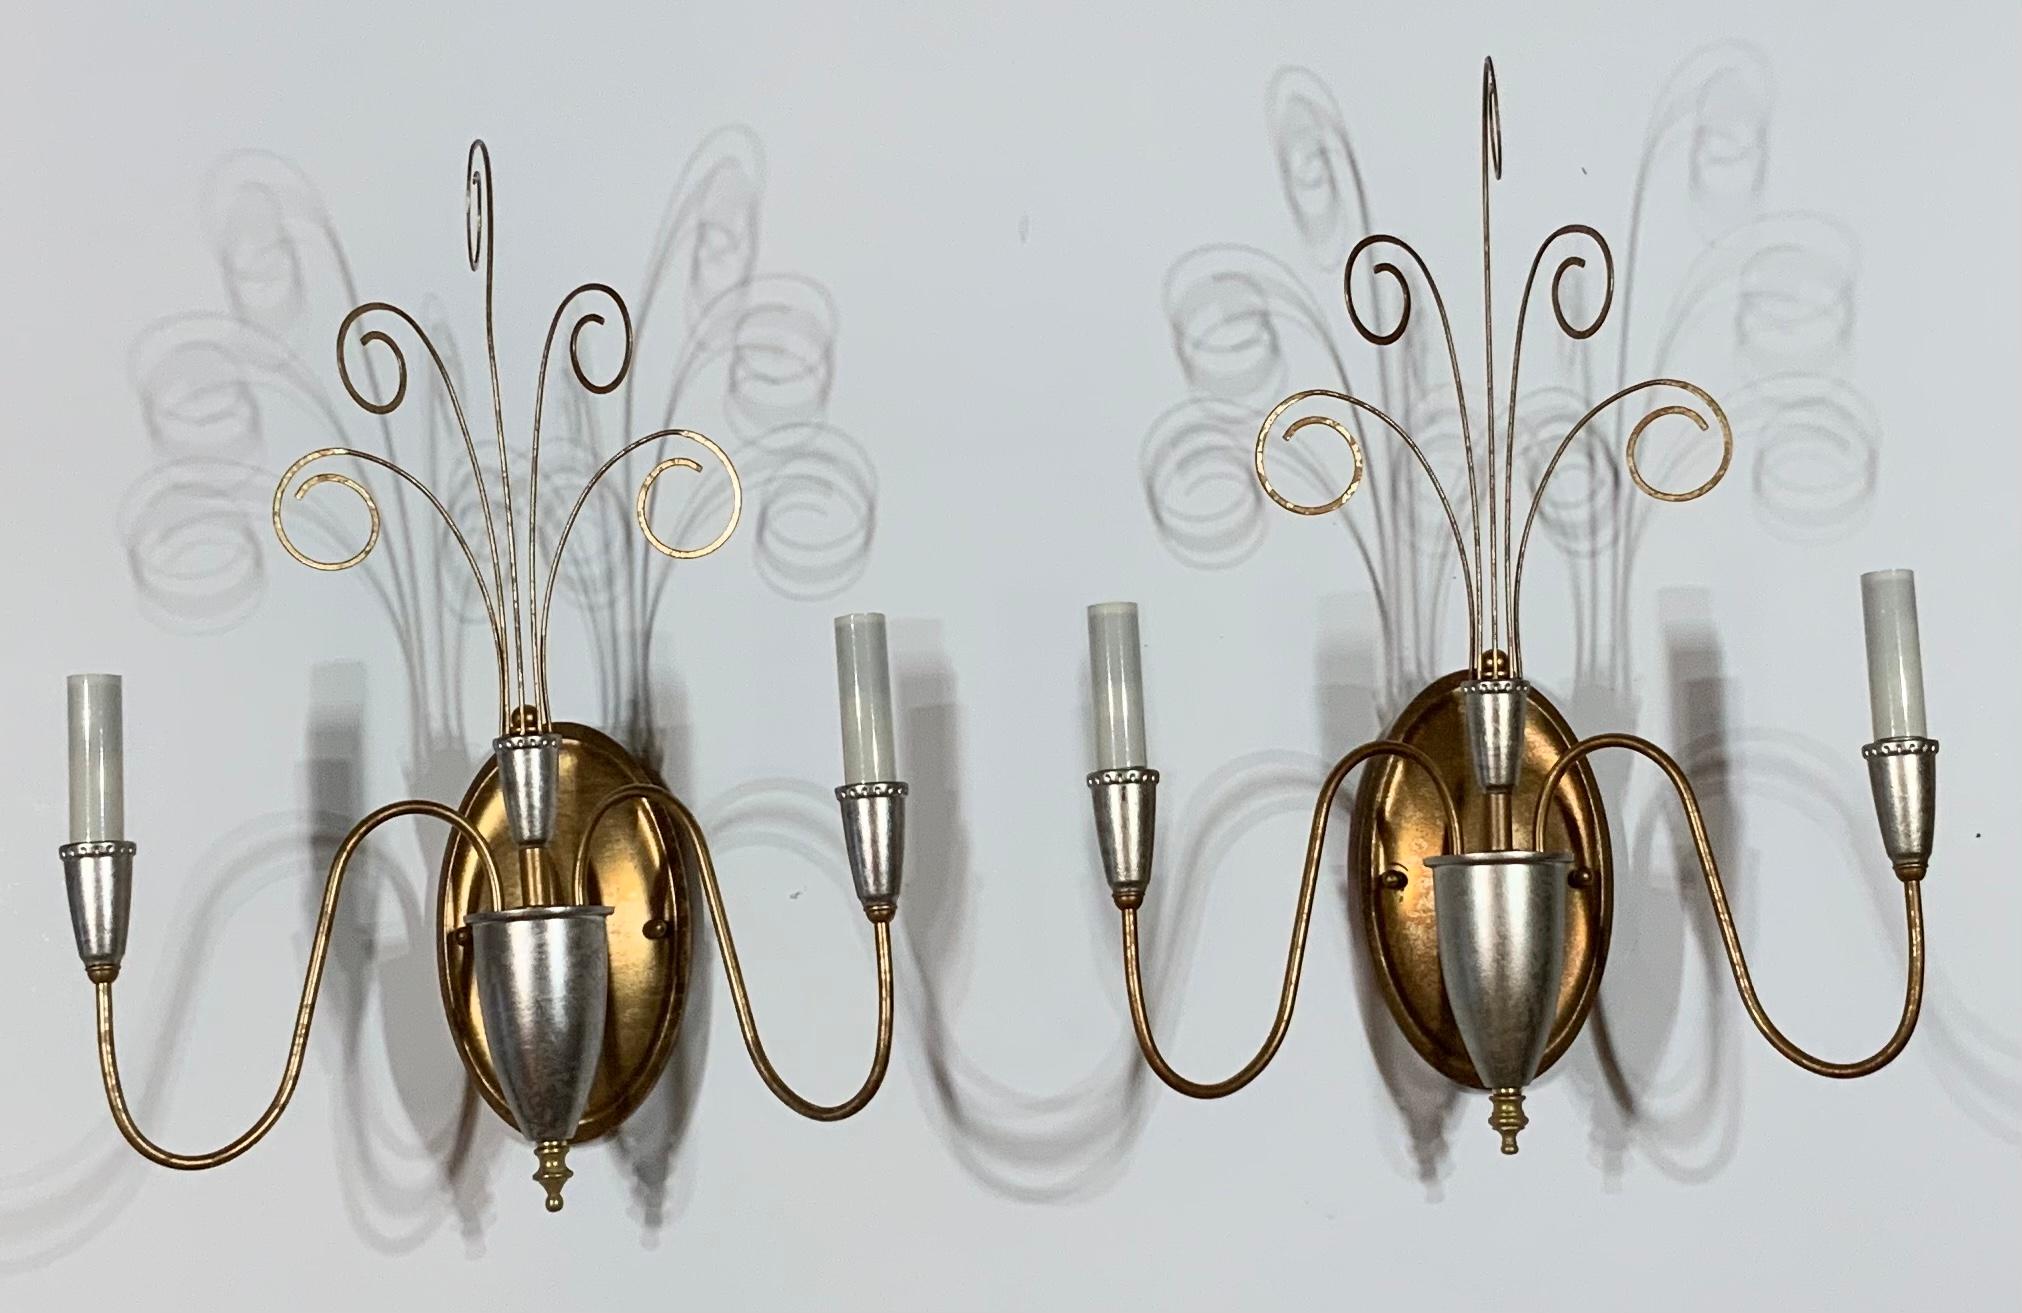 Elegantes Paar Wandleuchten aus Metall, silber- und goldfarben lackiert, mit zwei 60-Watt-Lampen pro Leuchte
Elektrifiziert und einsatzbereit. Schönes und sauber geschnittenes Paar für die Wand.
Ein weiteres Paar wird veröffentlicht.
    